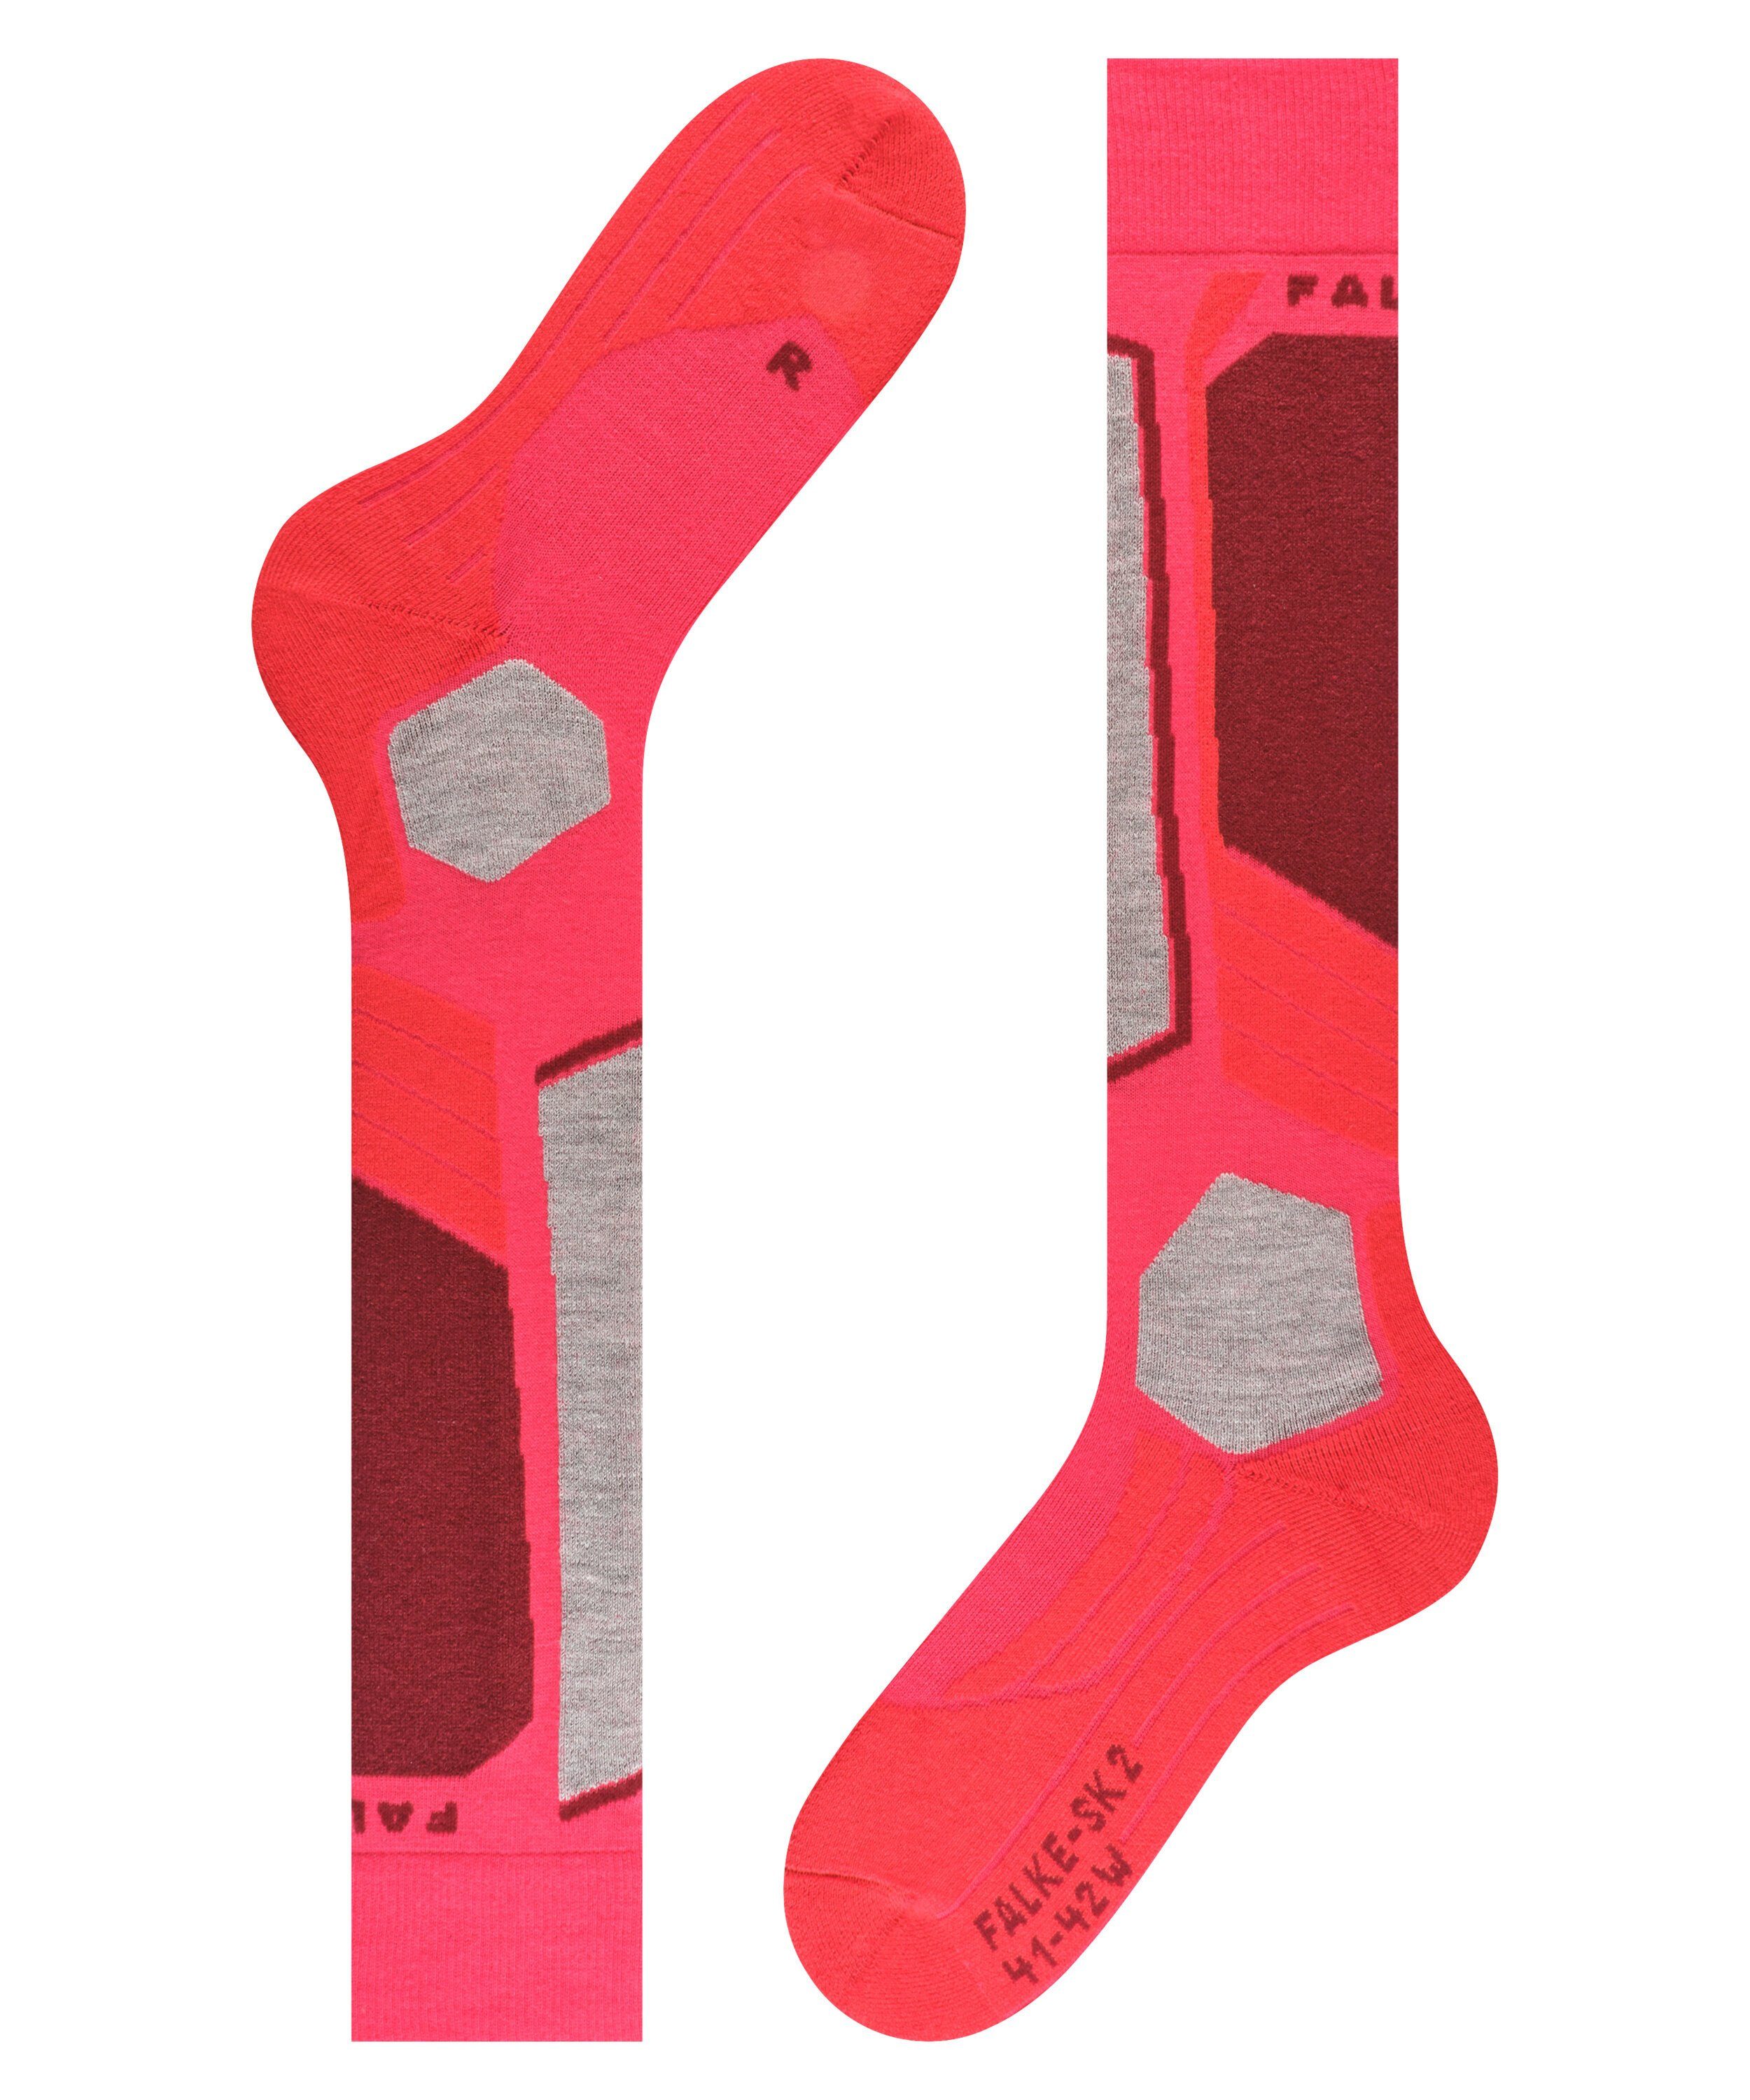 FALKE Skisocken mit Intermediate rose (8680) Kontrolle und Komfort für mittelstarker SK2 (1-Paar) Polsterung